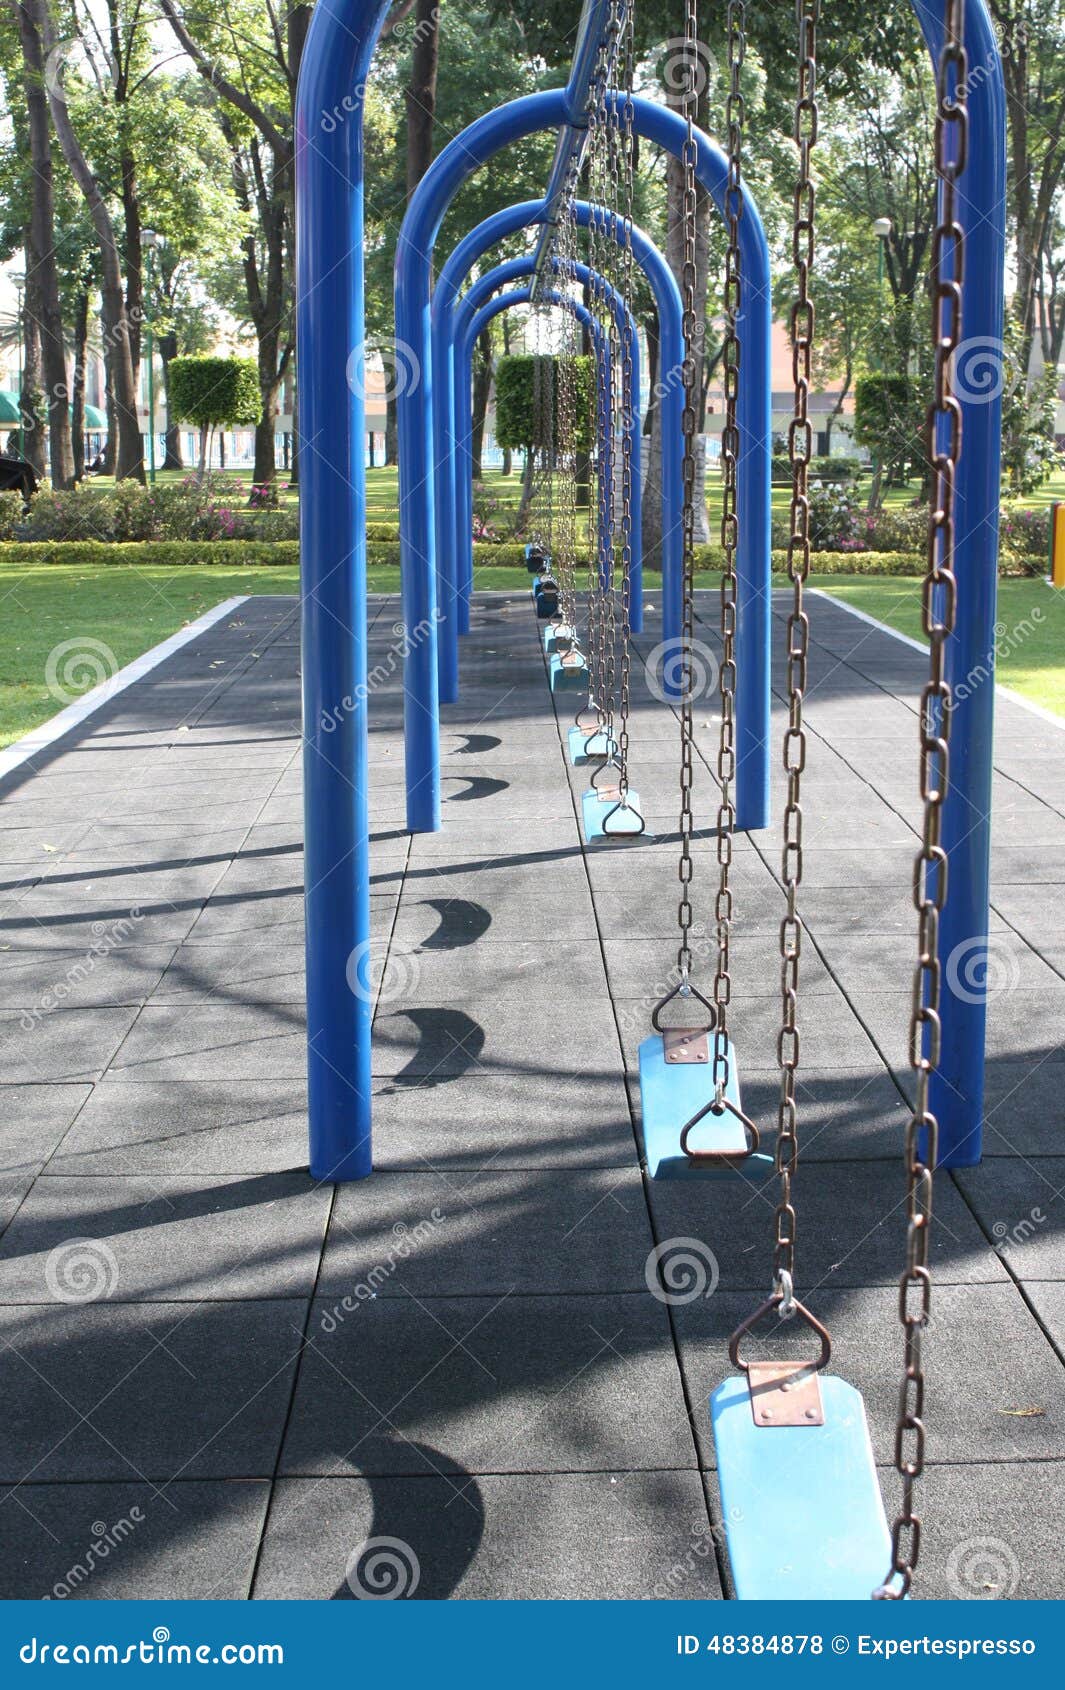 blue swings